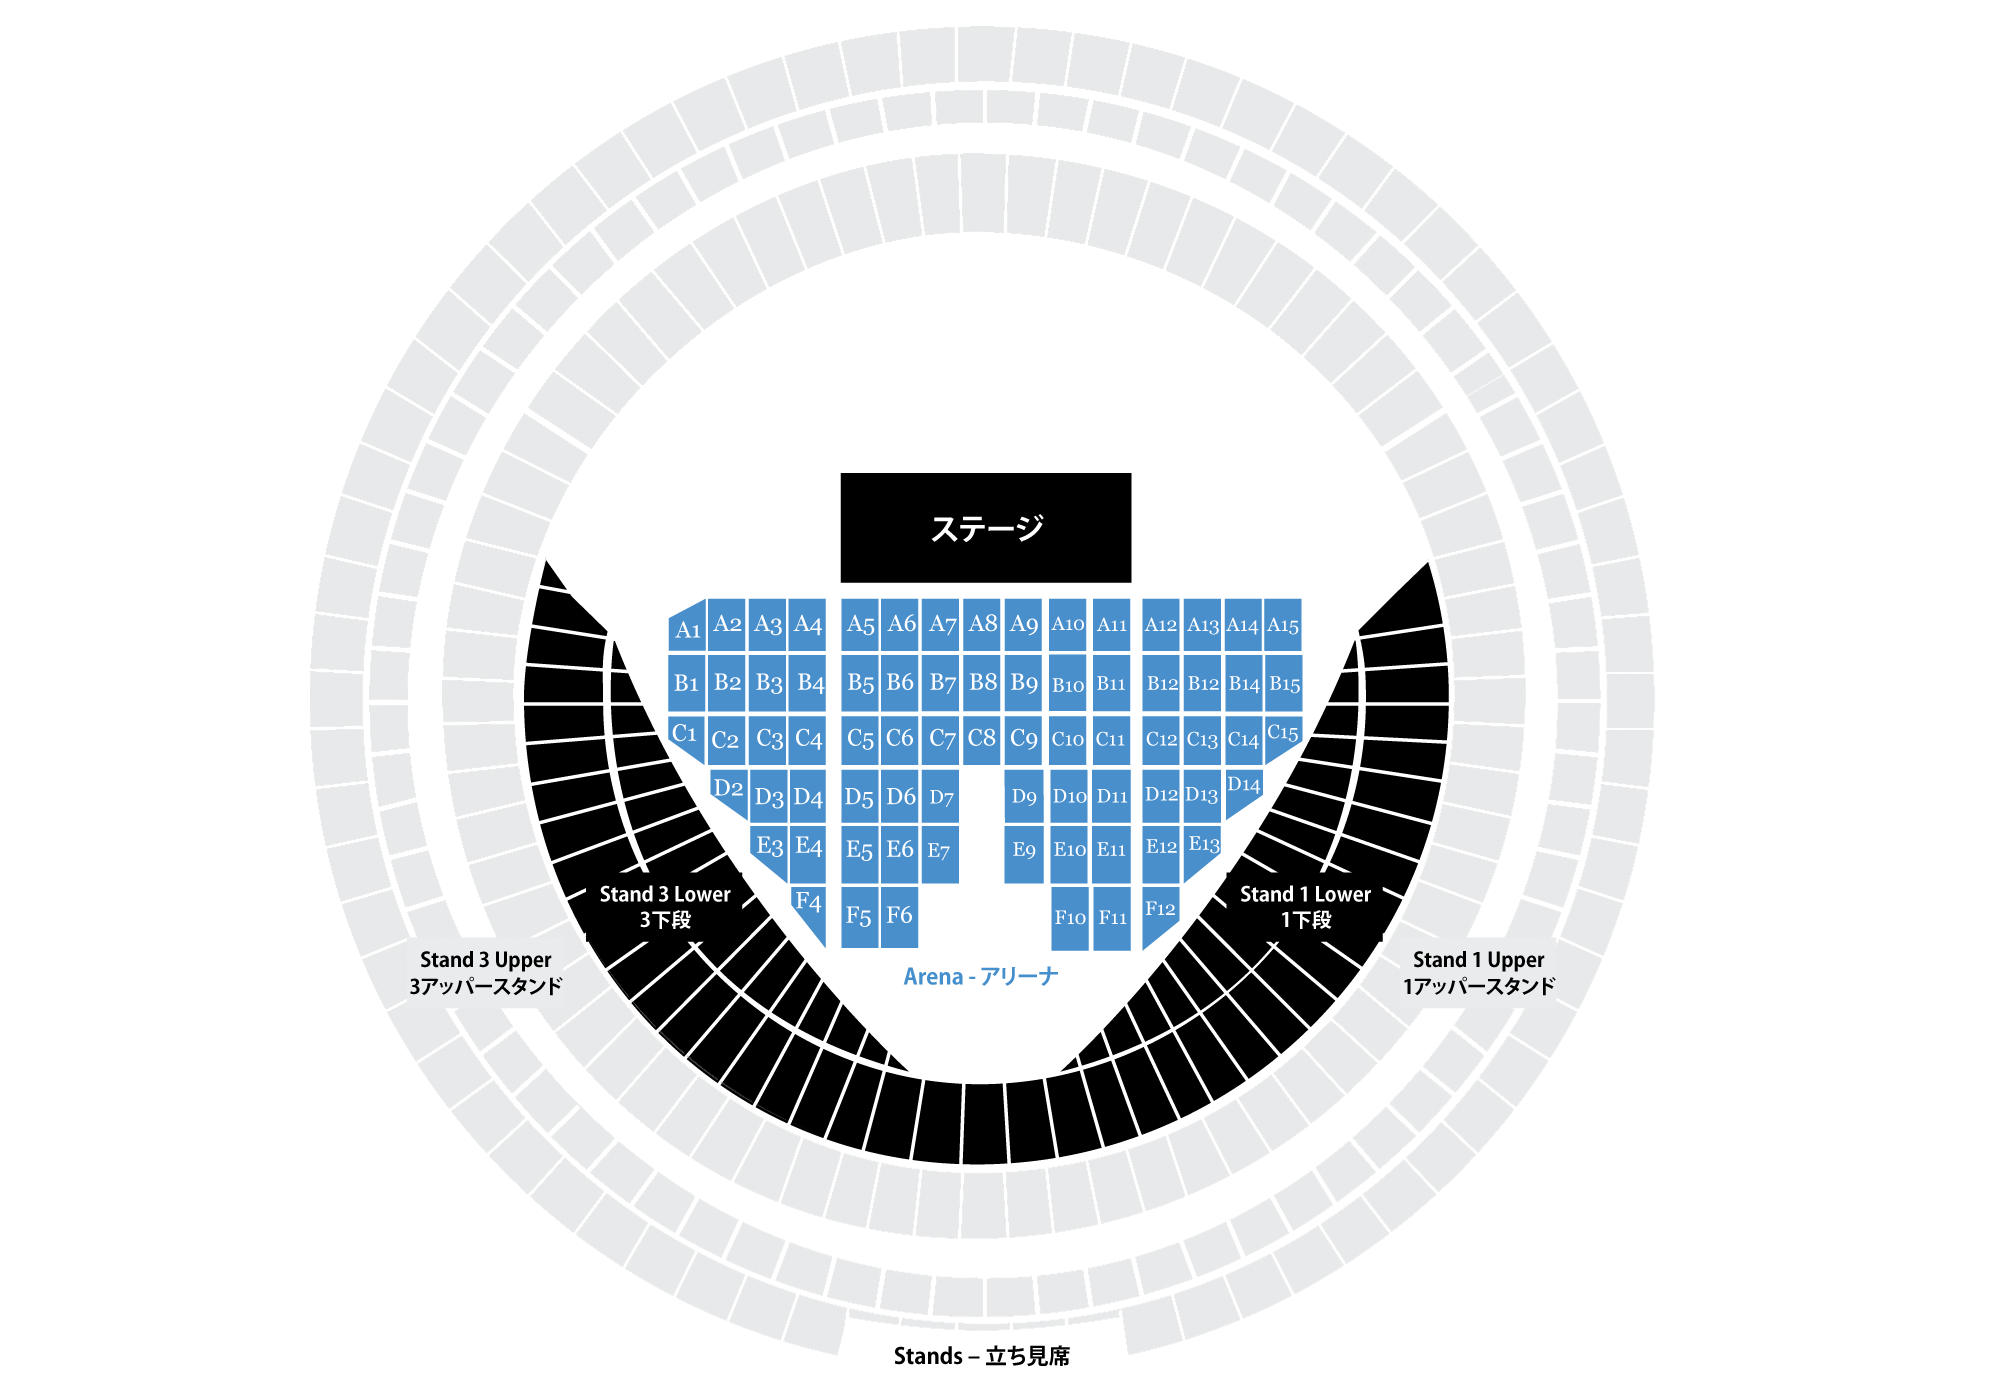 ポールマッカートニー13年来日 大阪京セラドームのアクセス ブロック割図 座席表 を見てみよう ポール マッカートニー来日 Write Blog